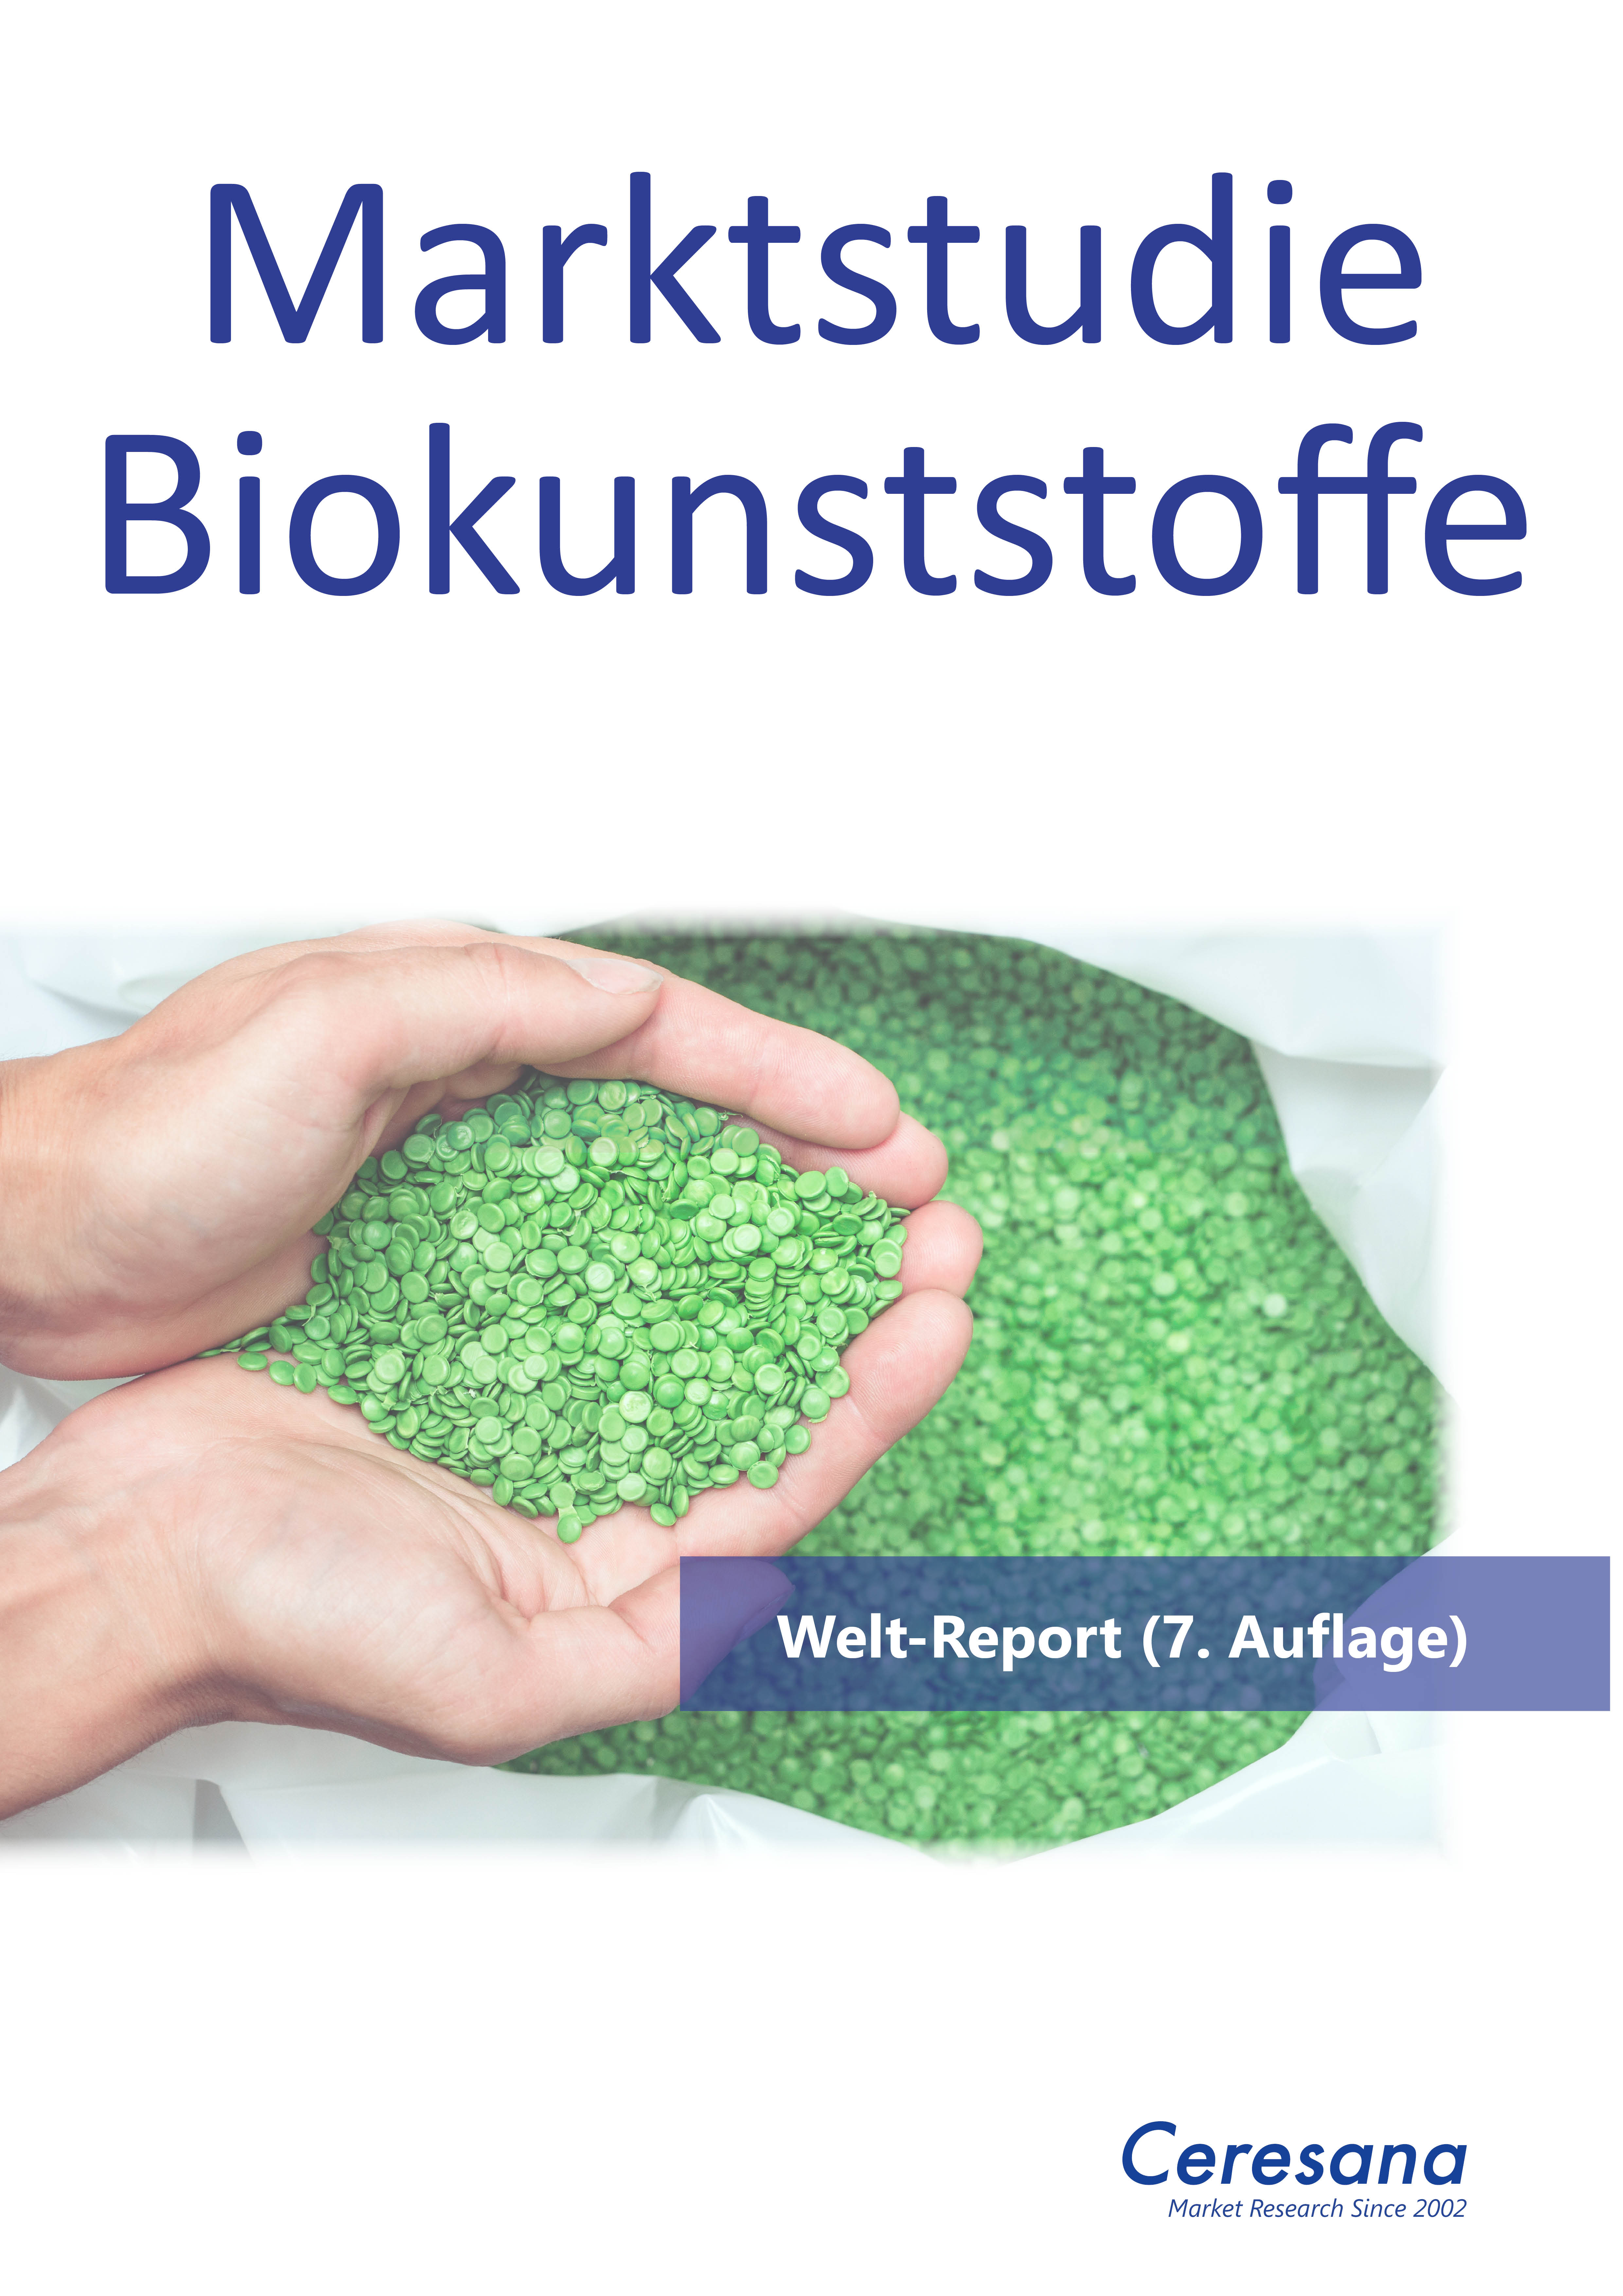 Deutsche-Politik-News.de | Marktstudie Biokunststoffe (7. Auflage)